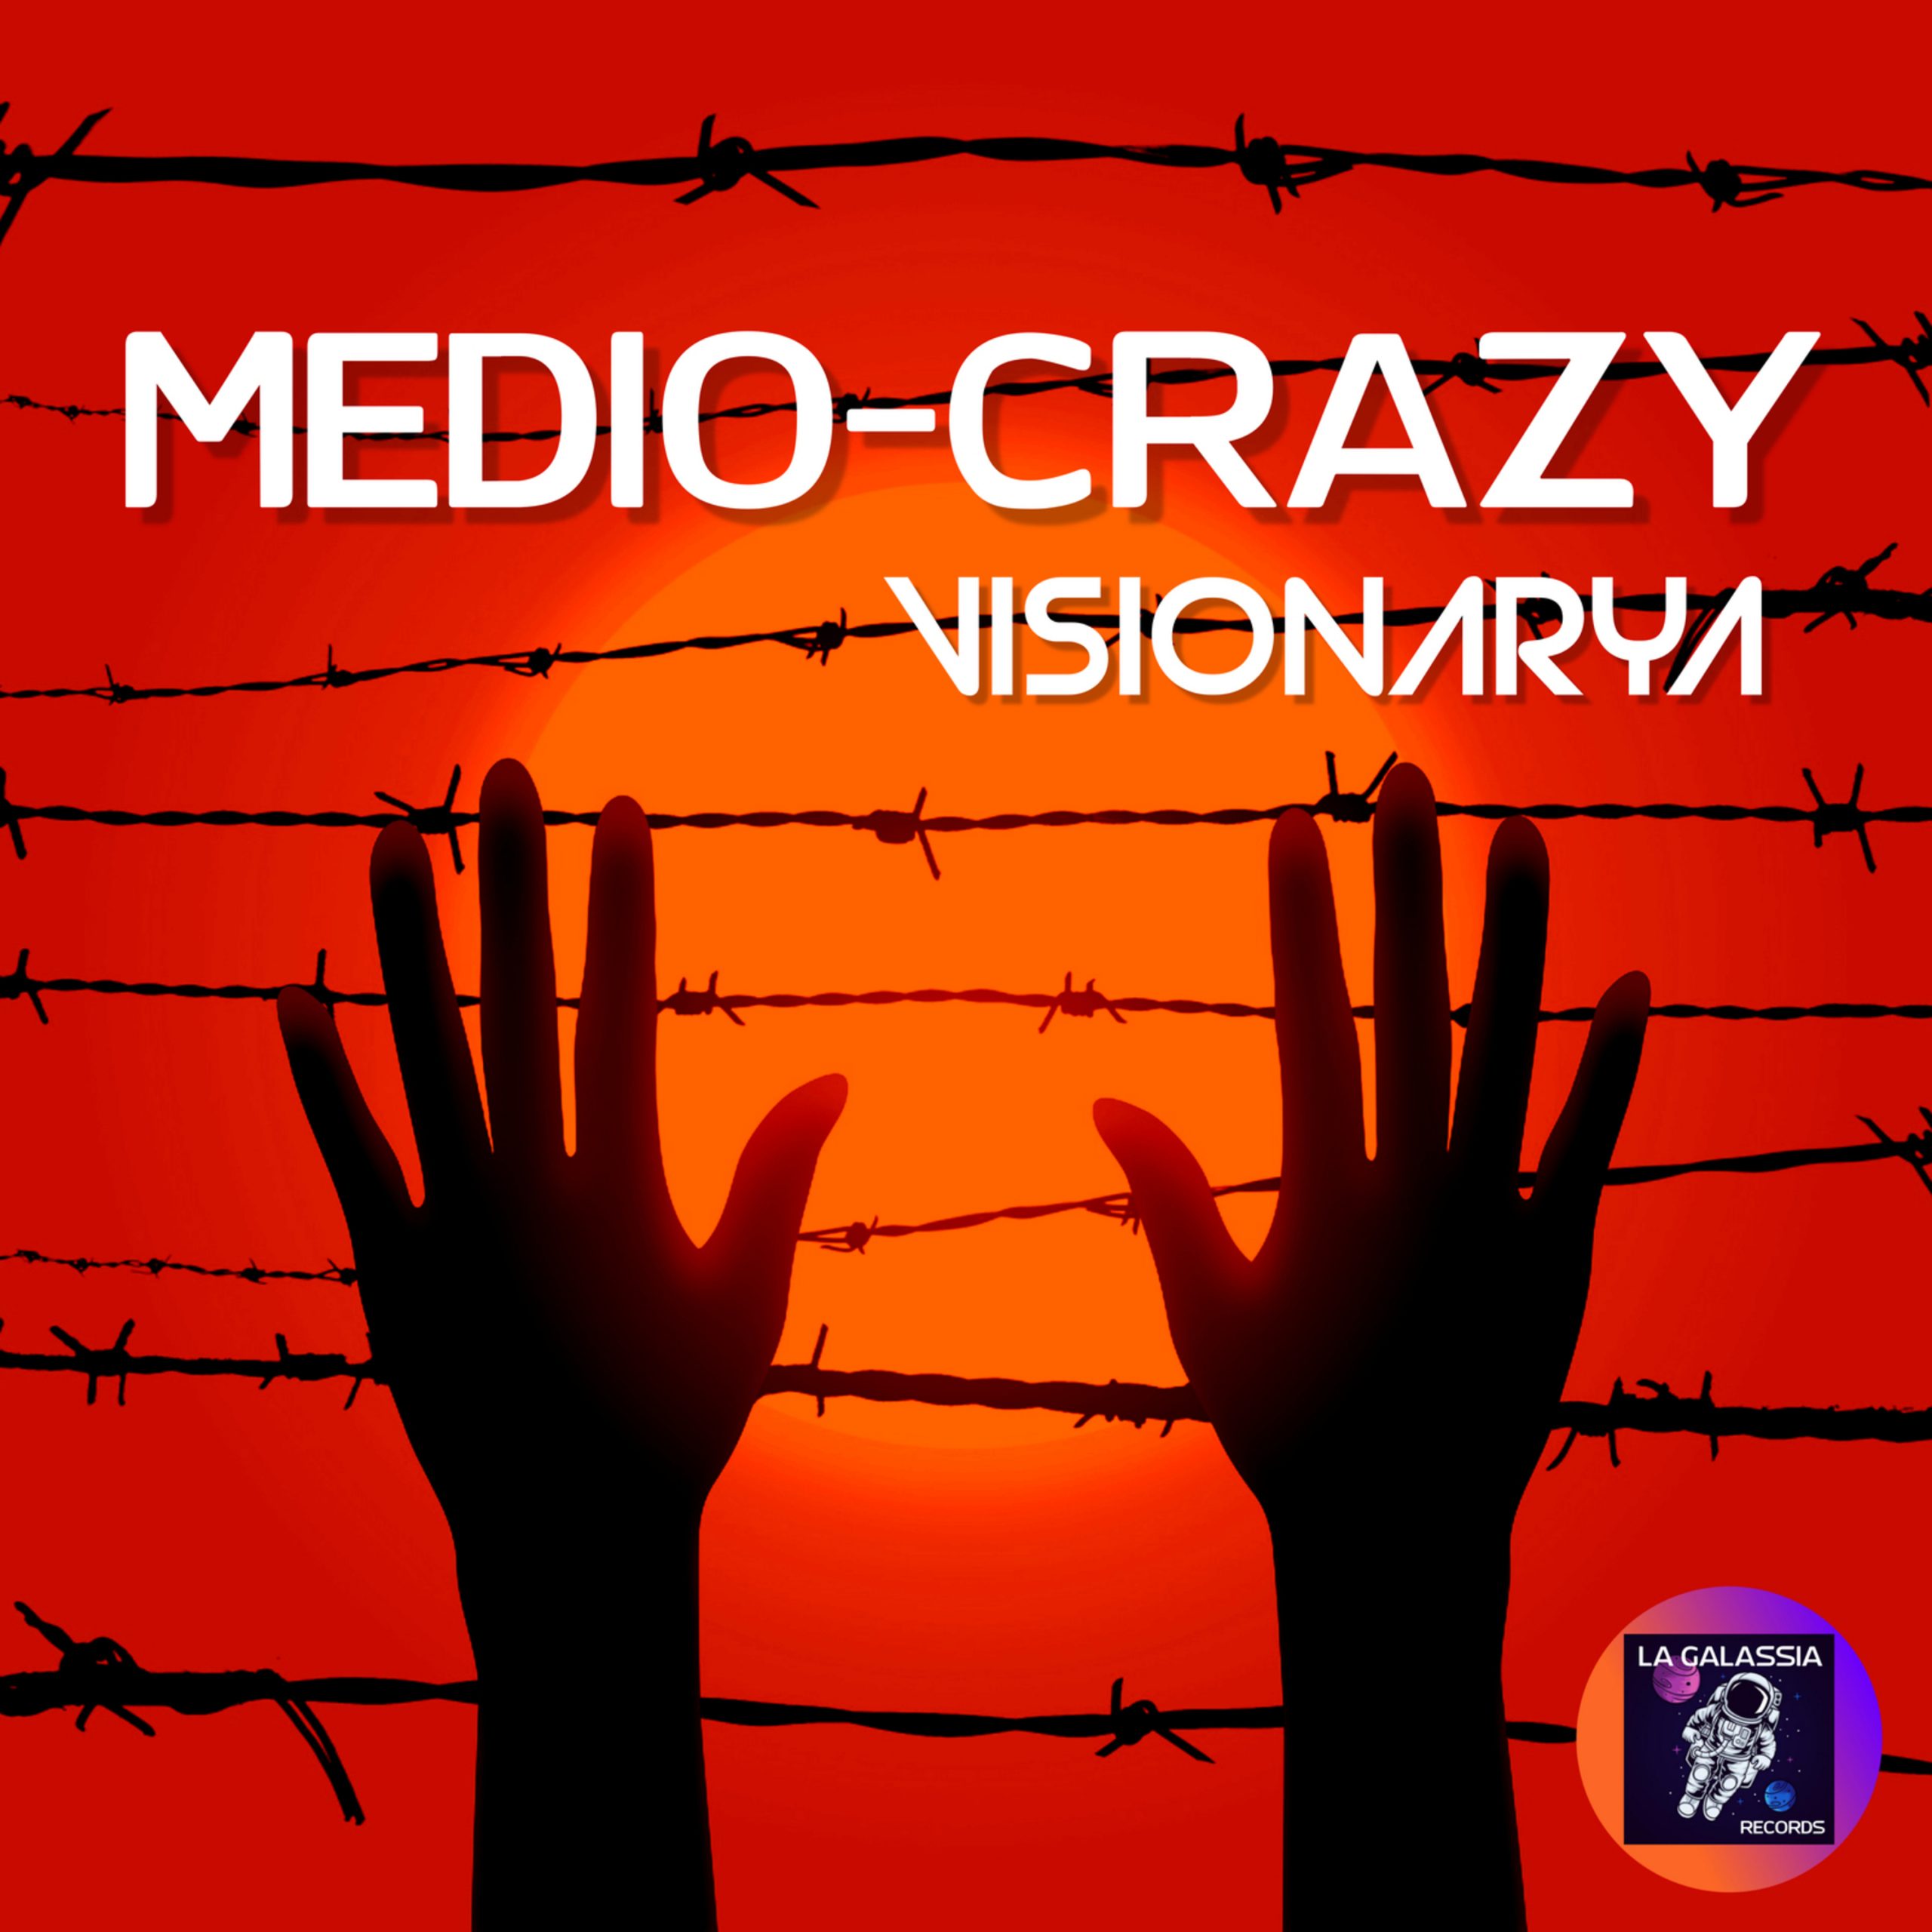 I Vsionarya pubblicano il nuovo singolo “Medio-Crazy”